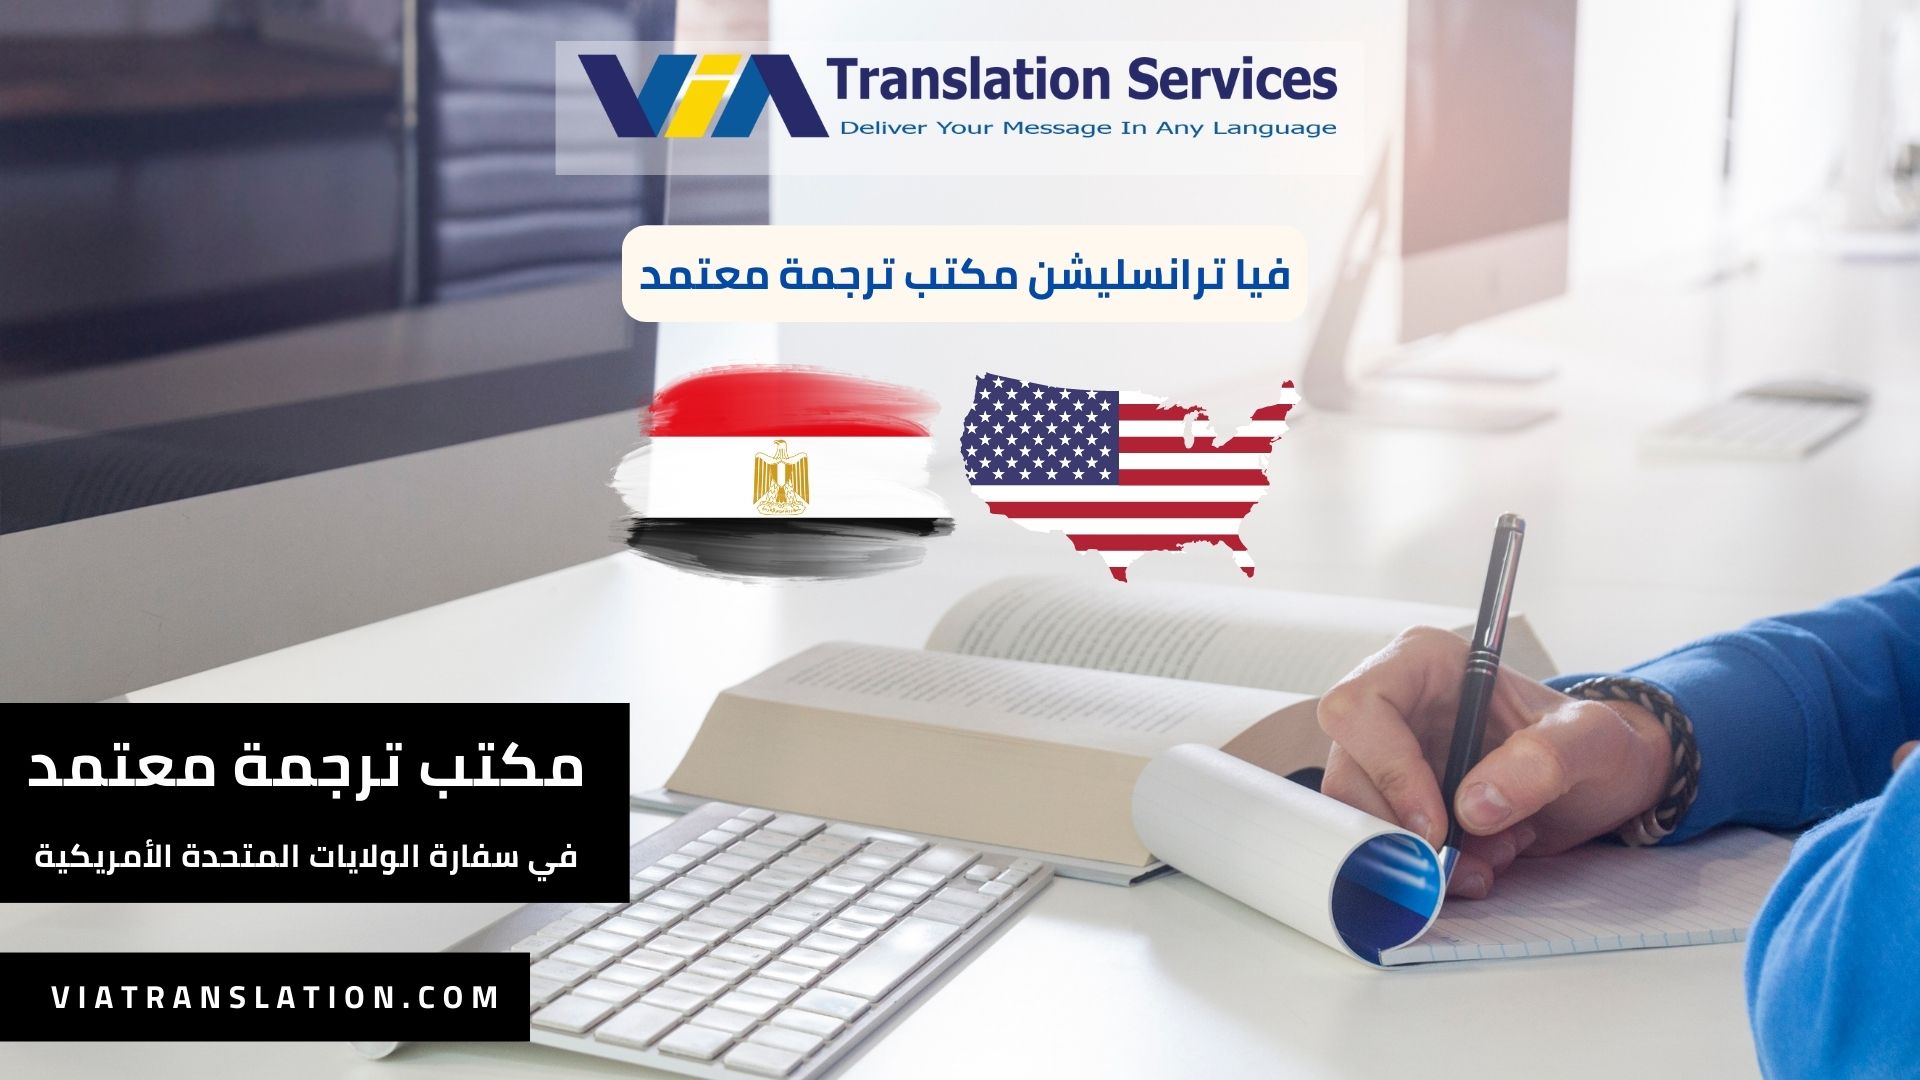 مكتب ترجمة معتمد لدى سفارة الولايات المتحدة الأمريكية في القاهرة (1)